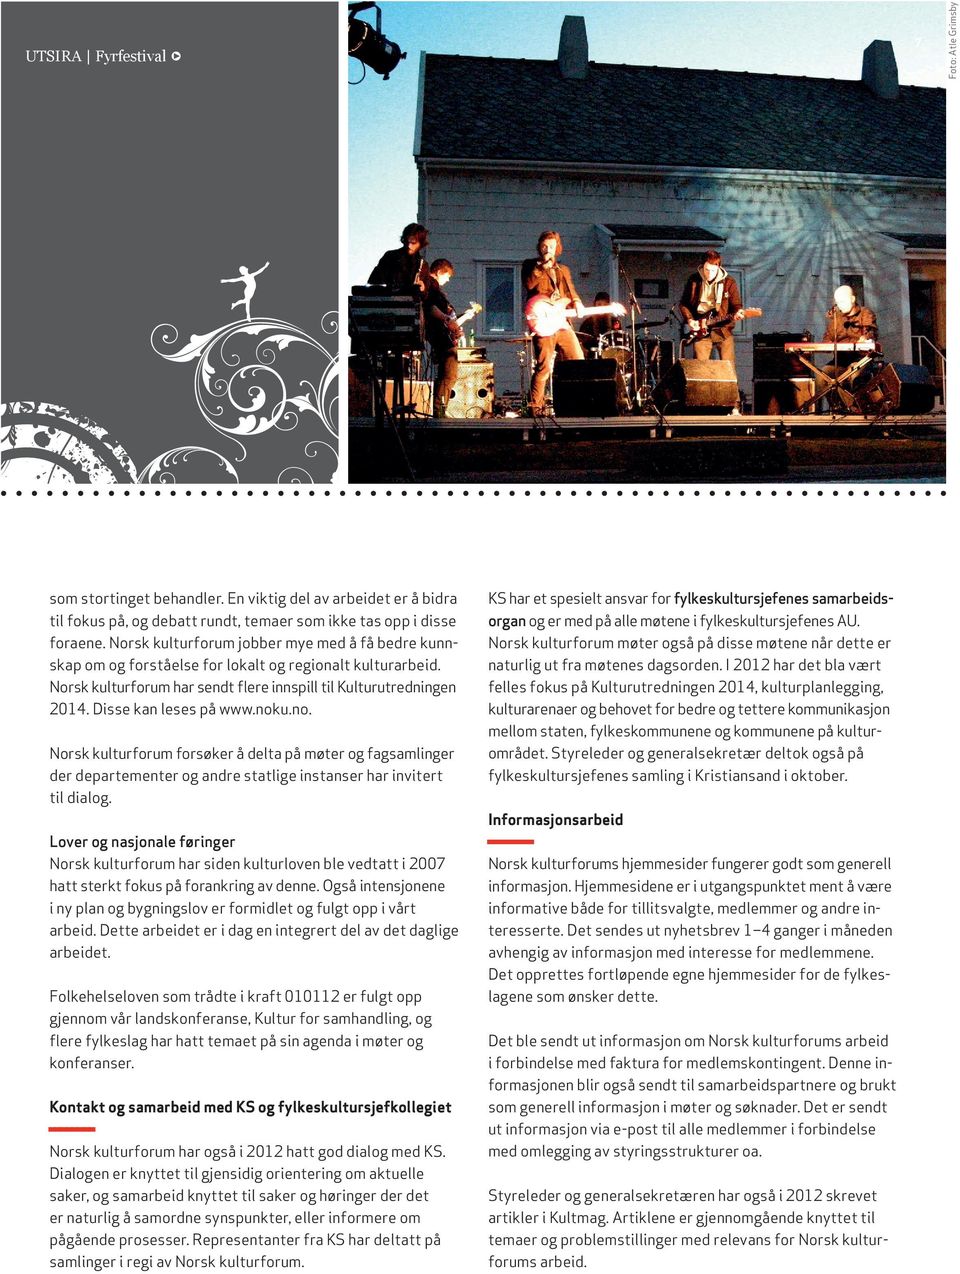 Disse kan leses på www.noku.no. Norsk kulturforum forsøker å delta på møter og fagsamlinger der departementer og andre statlige instanser har invitert til dialog.